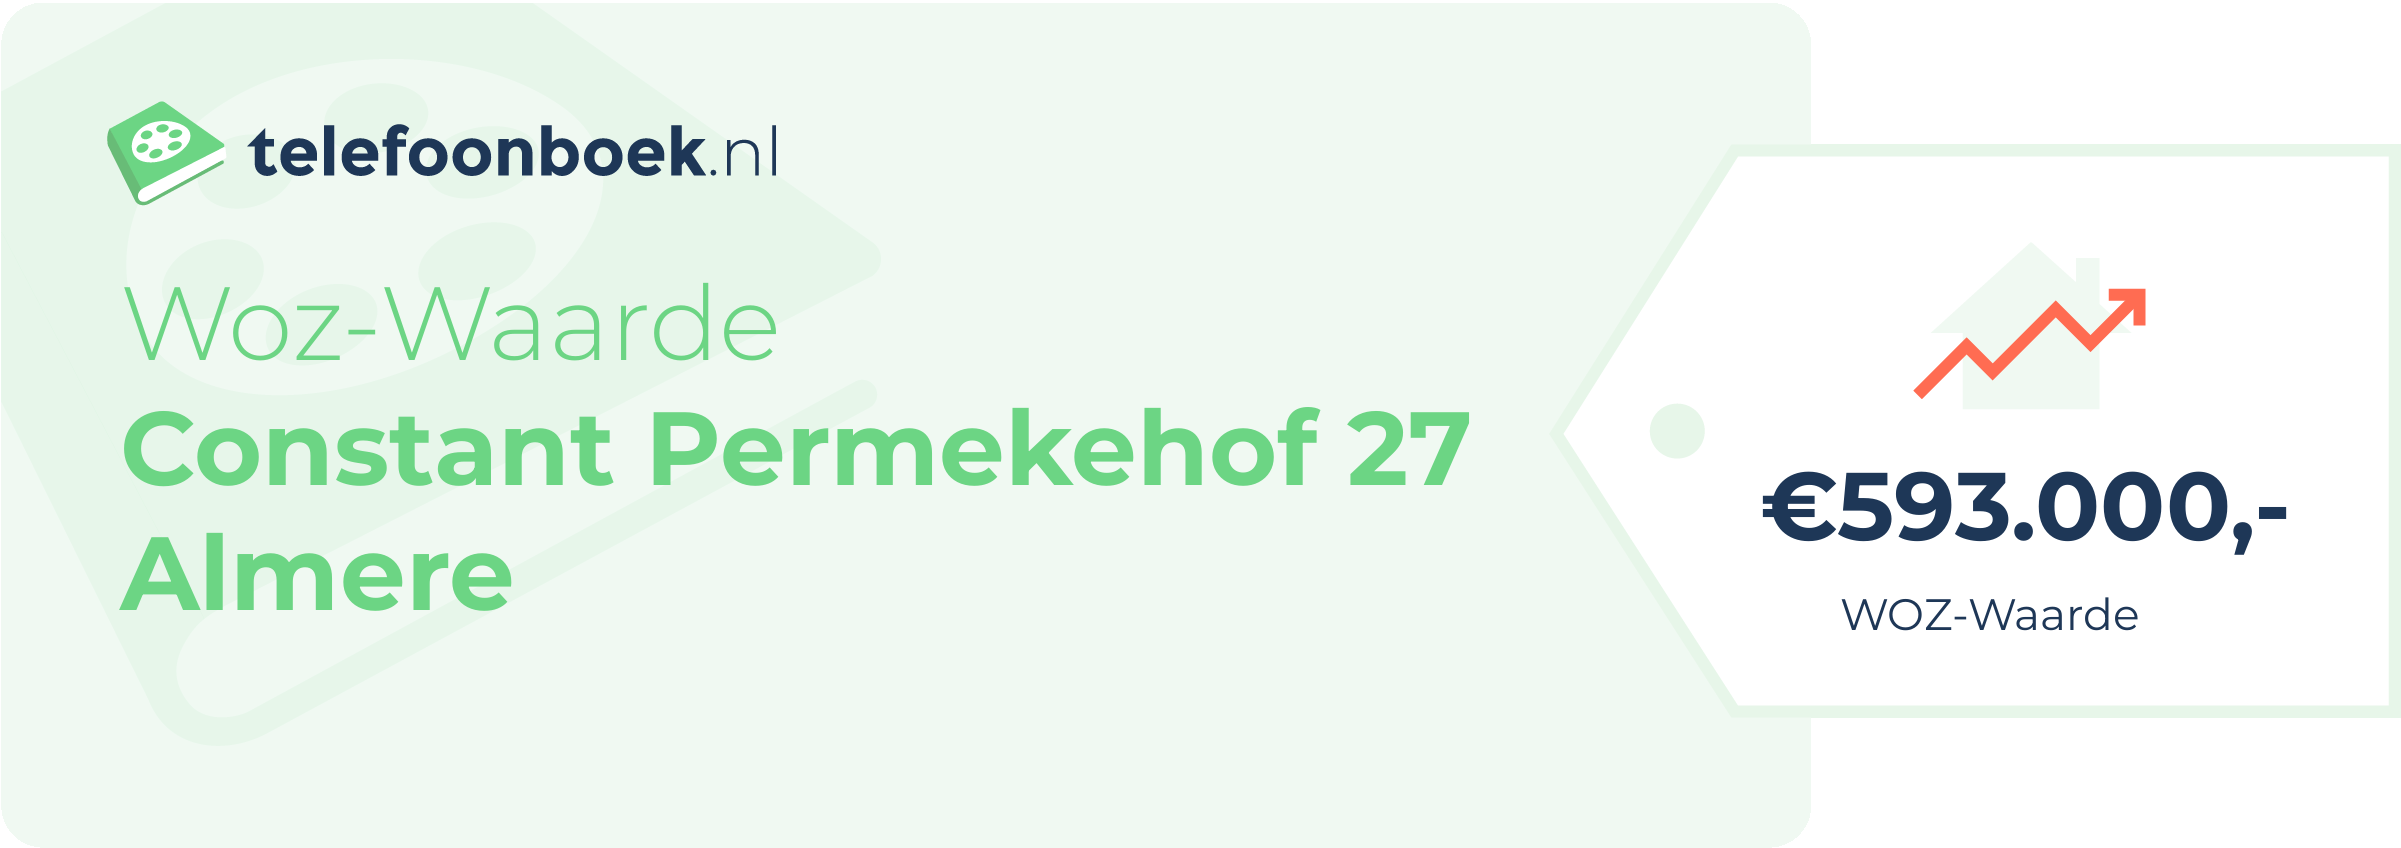 WOZ-waarde Constant Permekehof 27 Almere